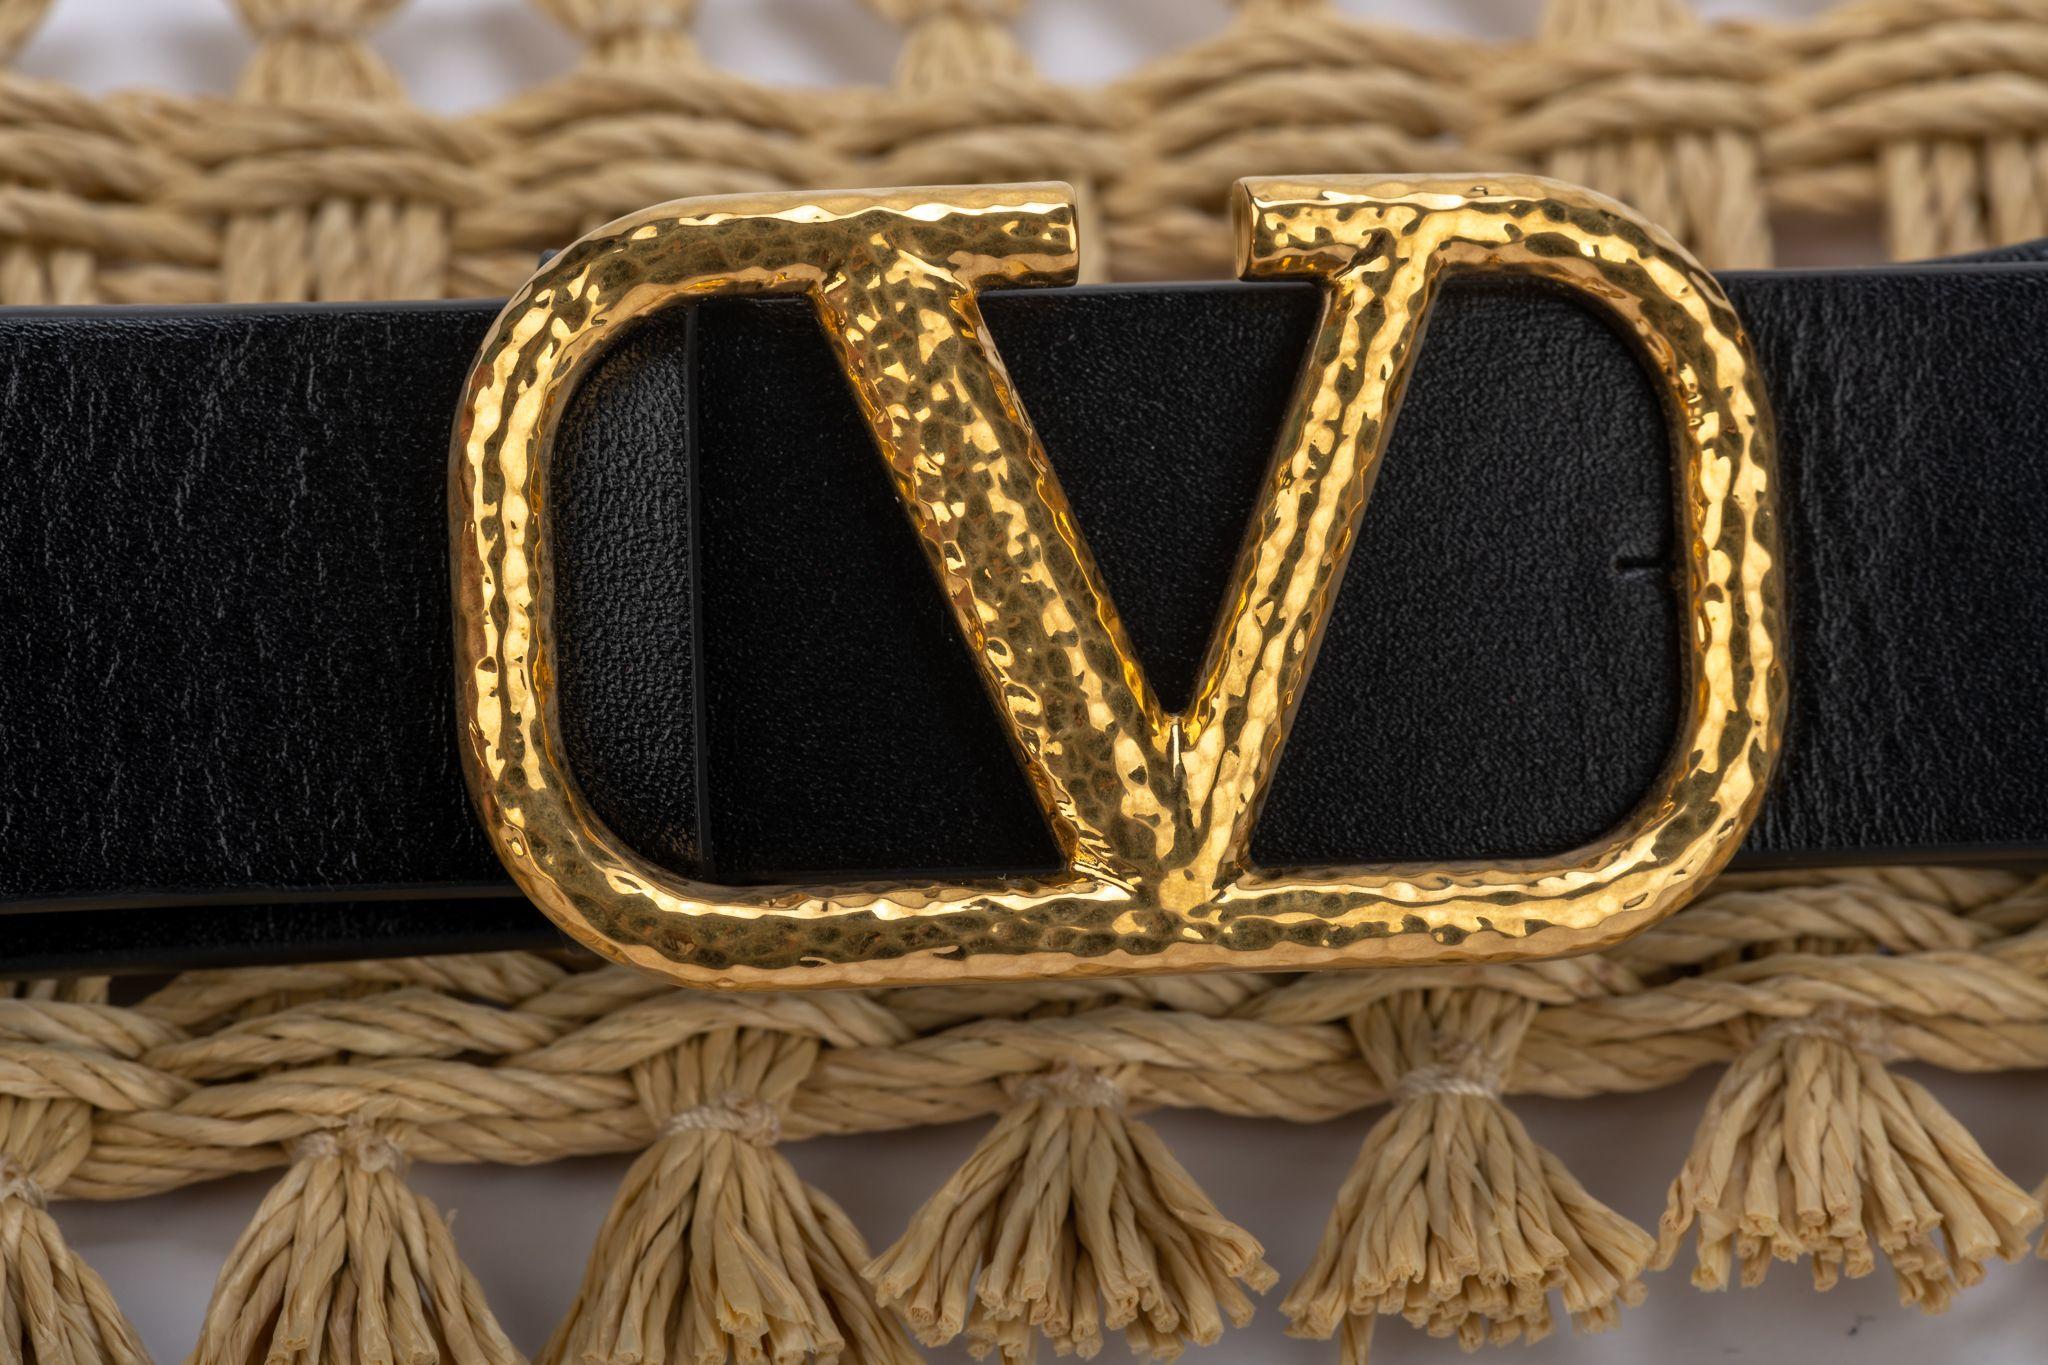 Valentino nouvelle ceinture large en raphia tissé et cuir noir avec logo, boucle martelée or. 85 cm/34